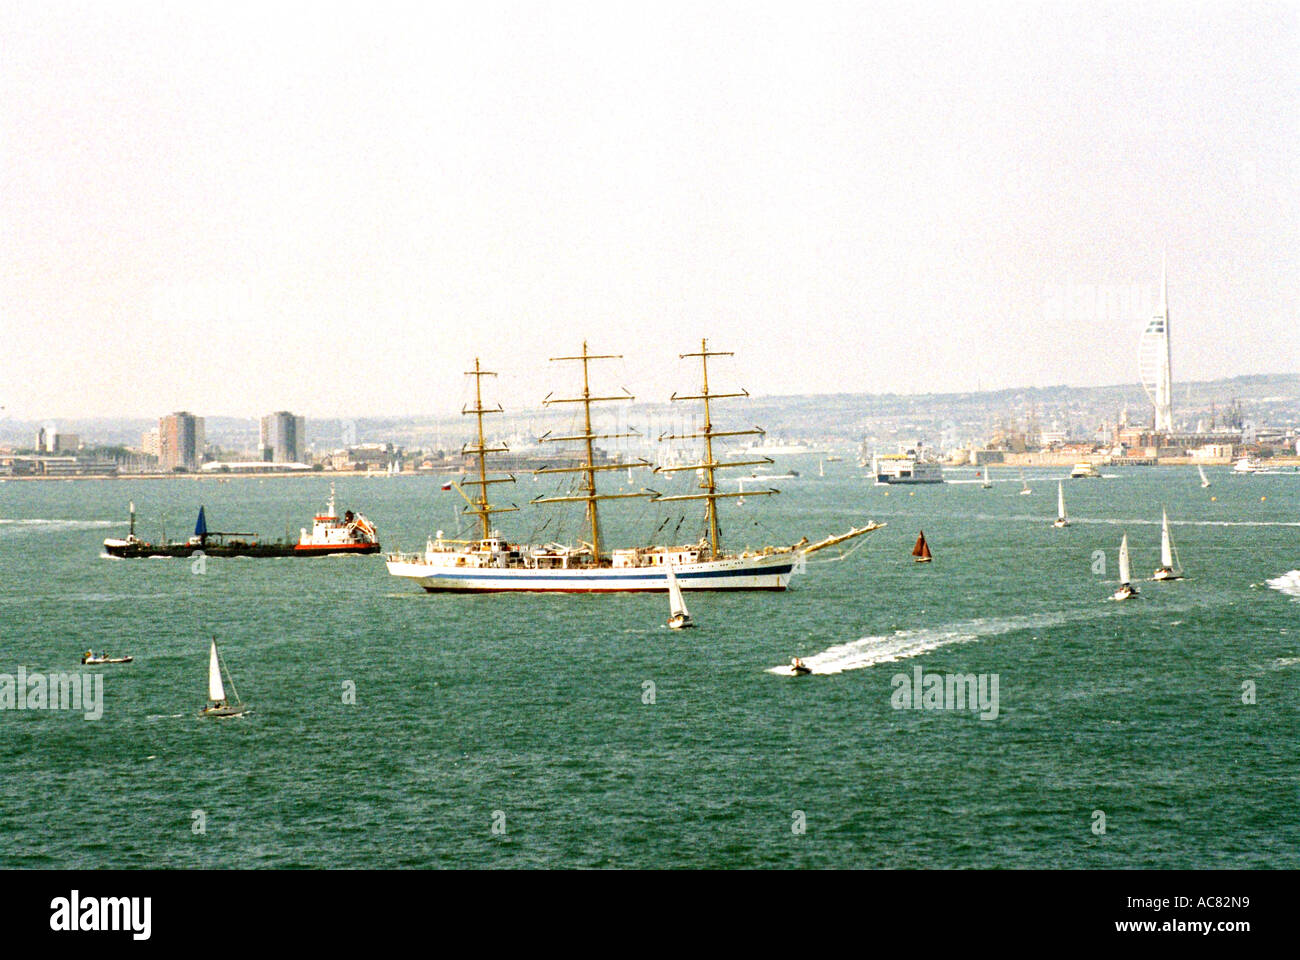 De grands navires ancrés dans le Solent, Portsmouth, Hmapshire, Angleterre. IFOS 2005. Banque D'Images